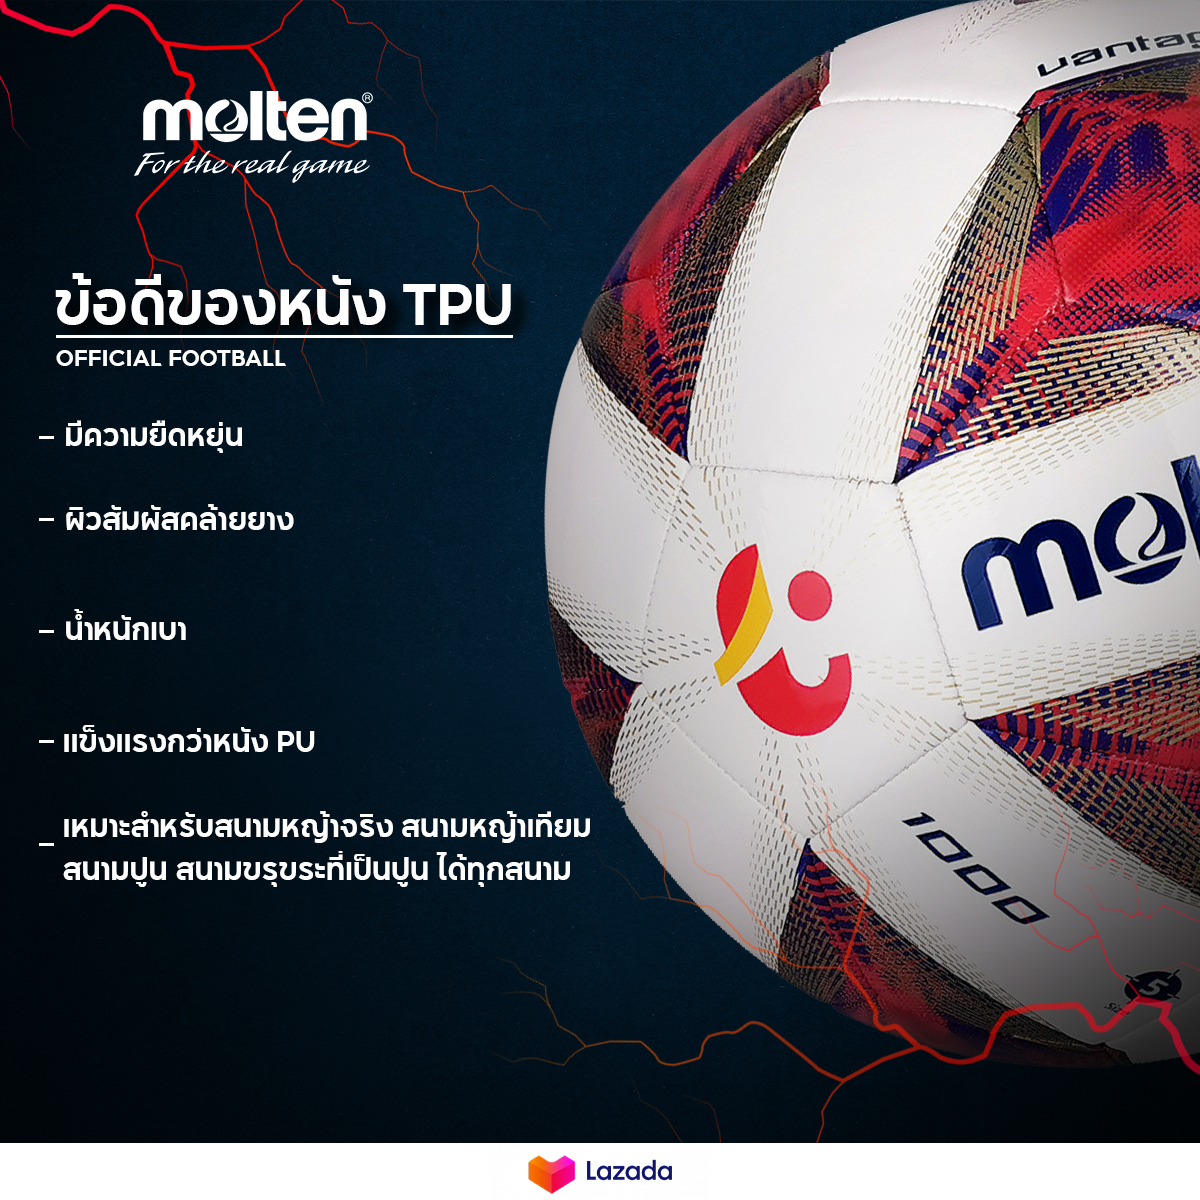 เกี่ยวกับสินค้า MOLTEN  มอลเท่น ลูกฟุตบอลเย็บMOT Football UEL MST TPU pk F5U1000-12  SIZE 5 (460)  แถมฟรี เข็มสูบ+ตาข่าย